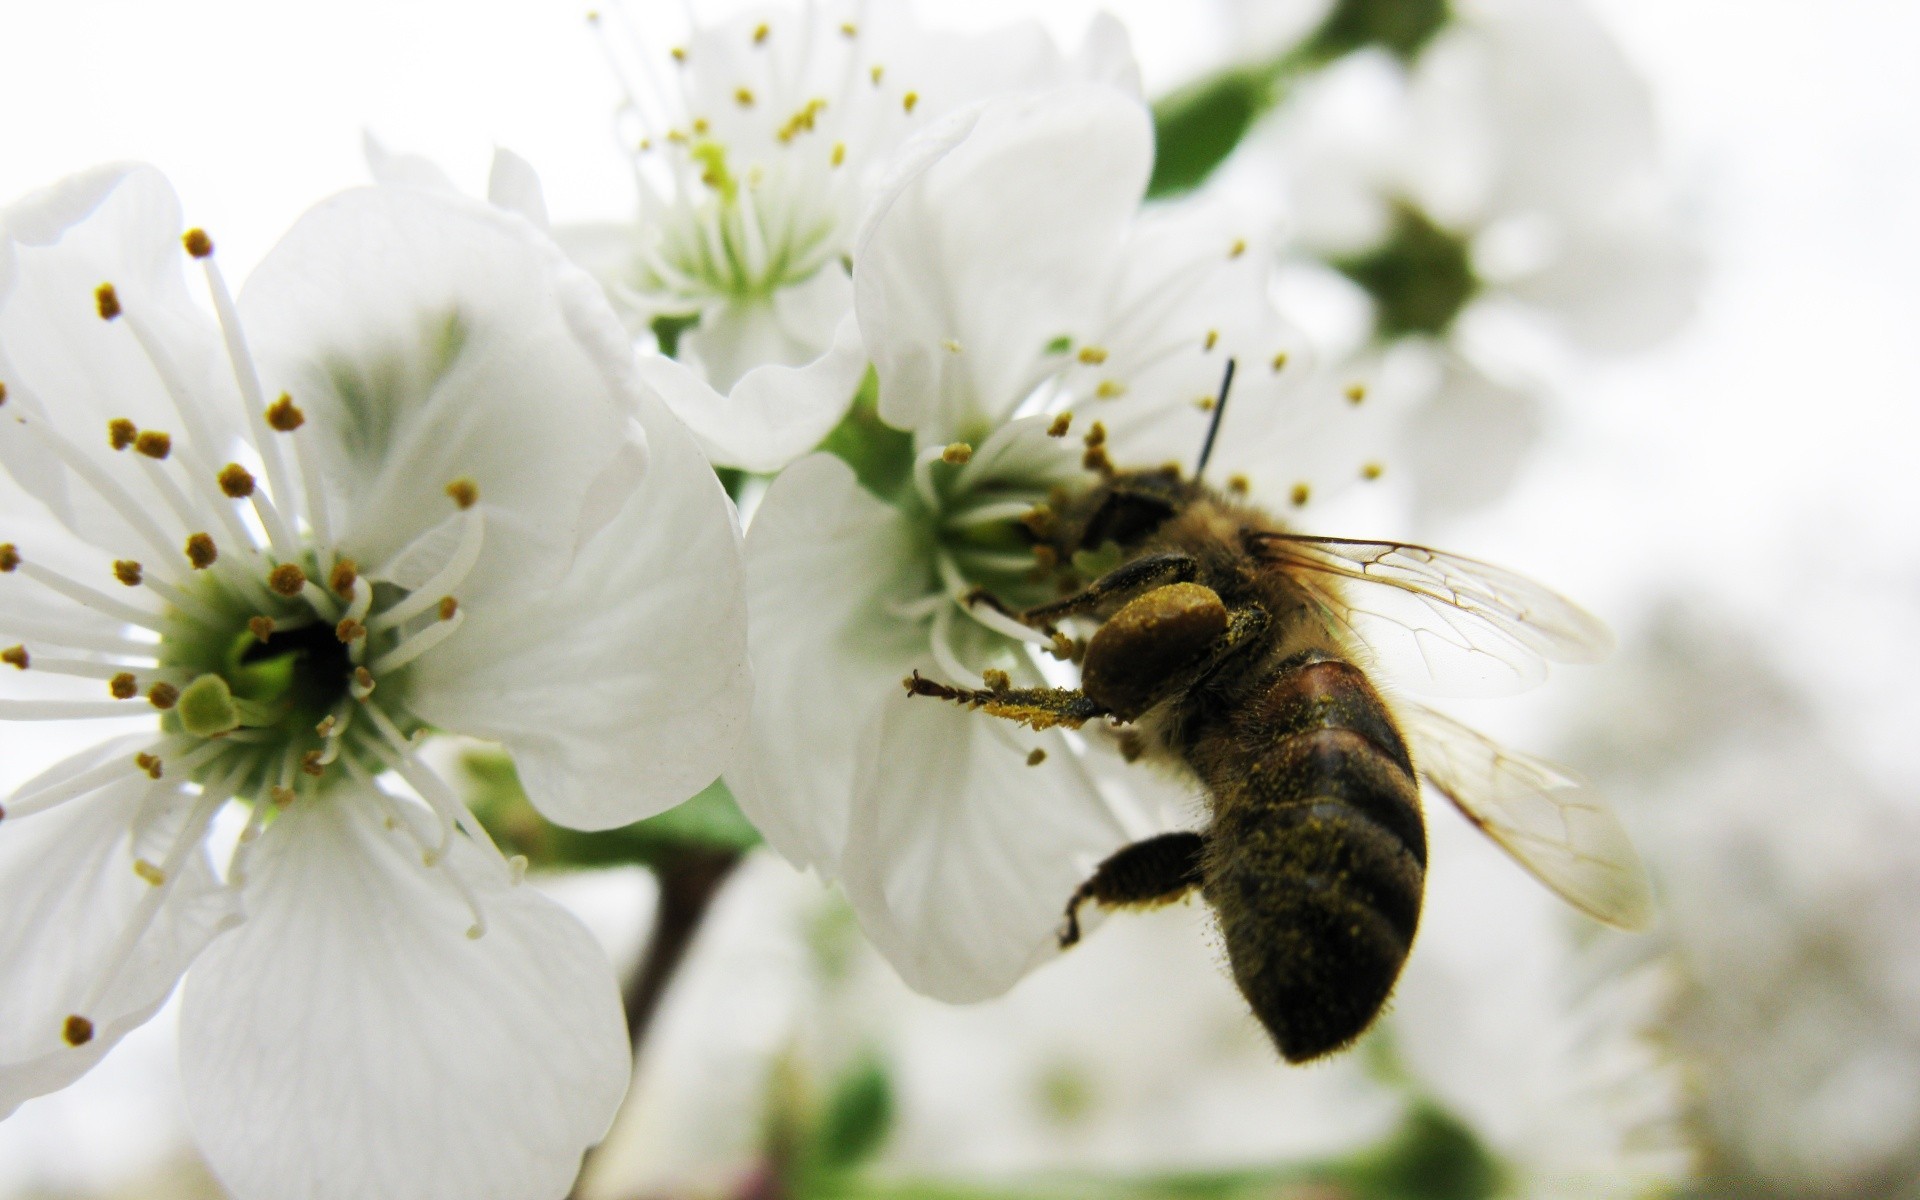 насекомые цветок природа пчелка флора сад пыльца насекомое лепесток блюминг лето лист дерево опыление дружище вишня цветочные мед крупным планом на открытом воздухе